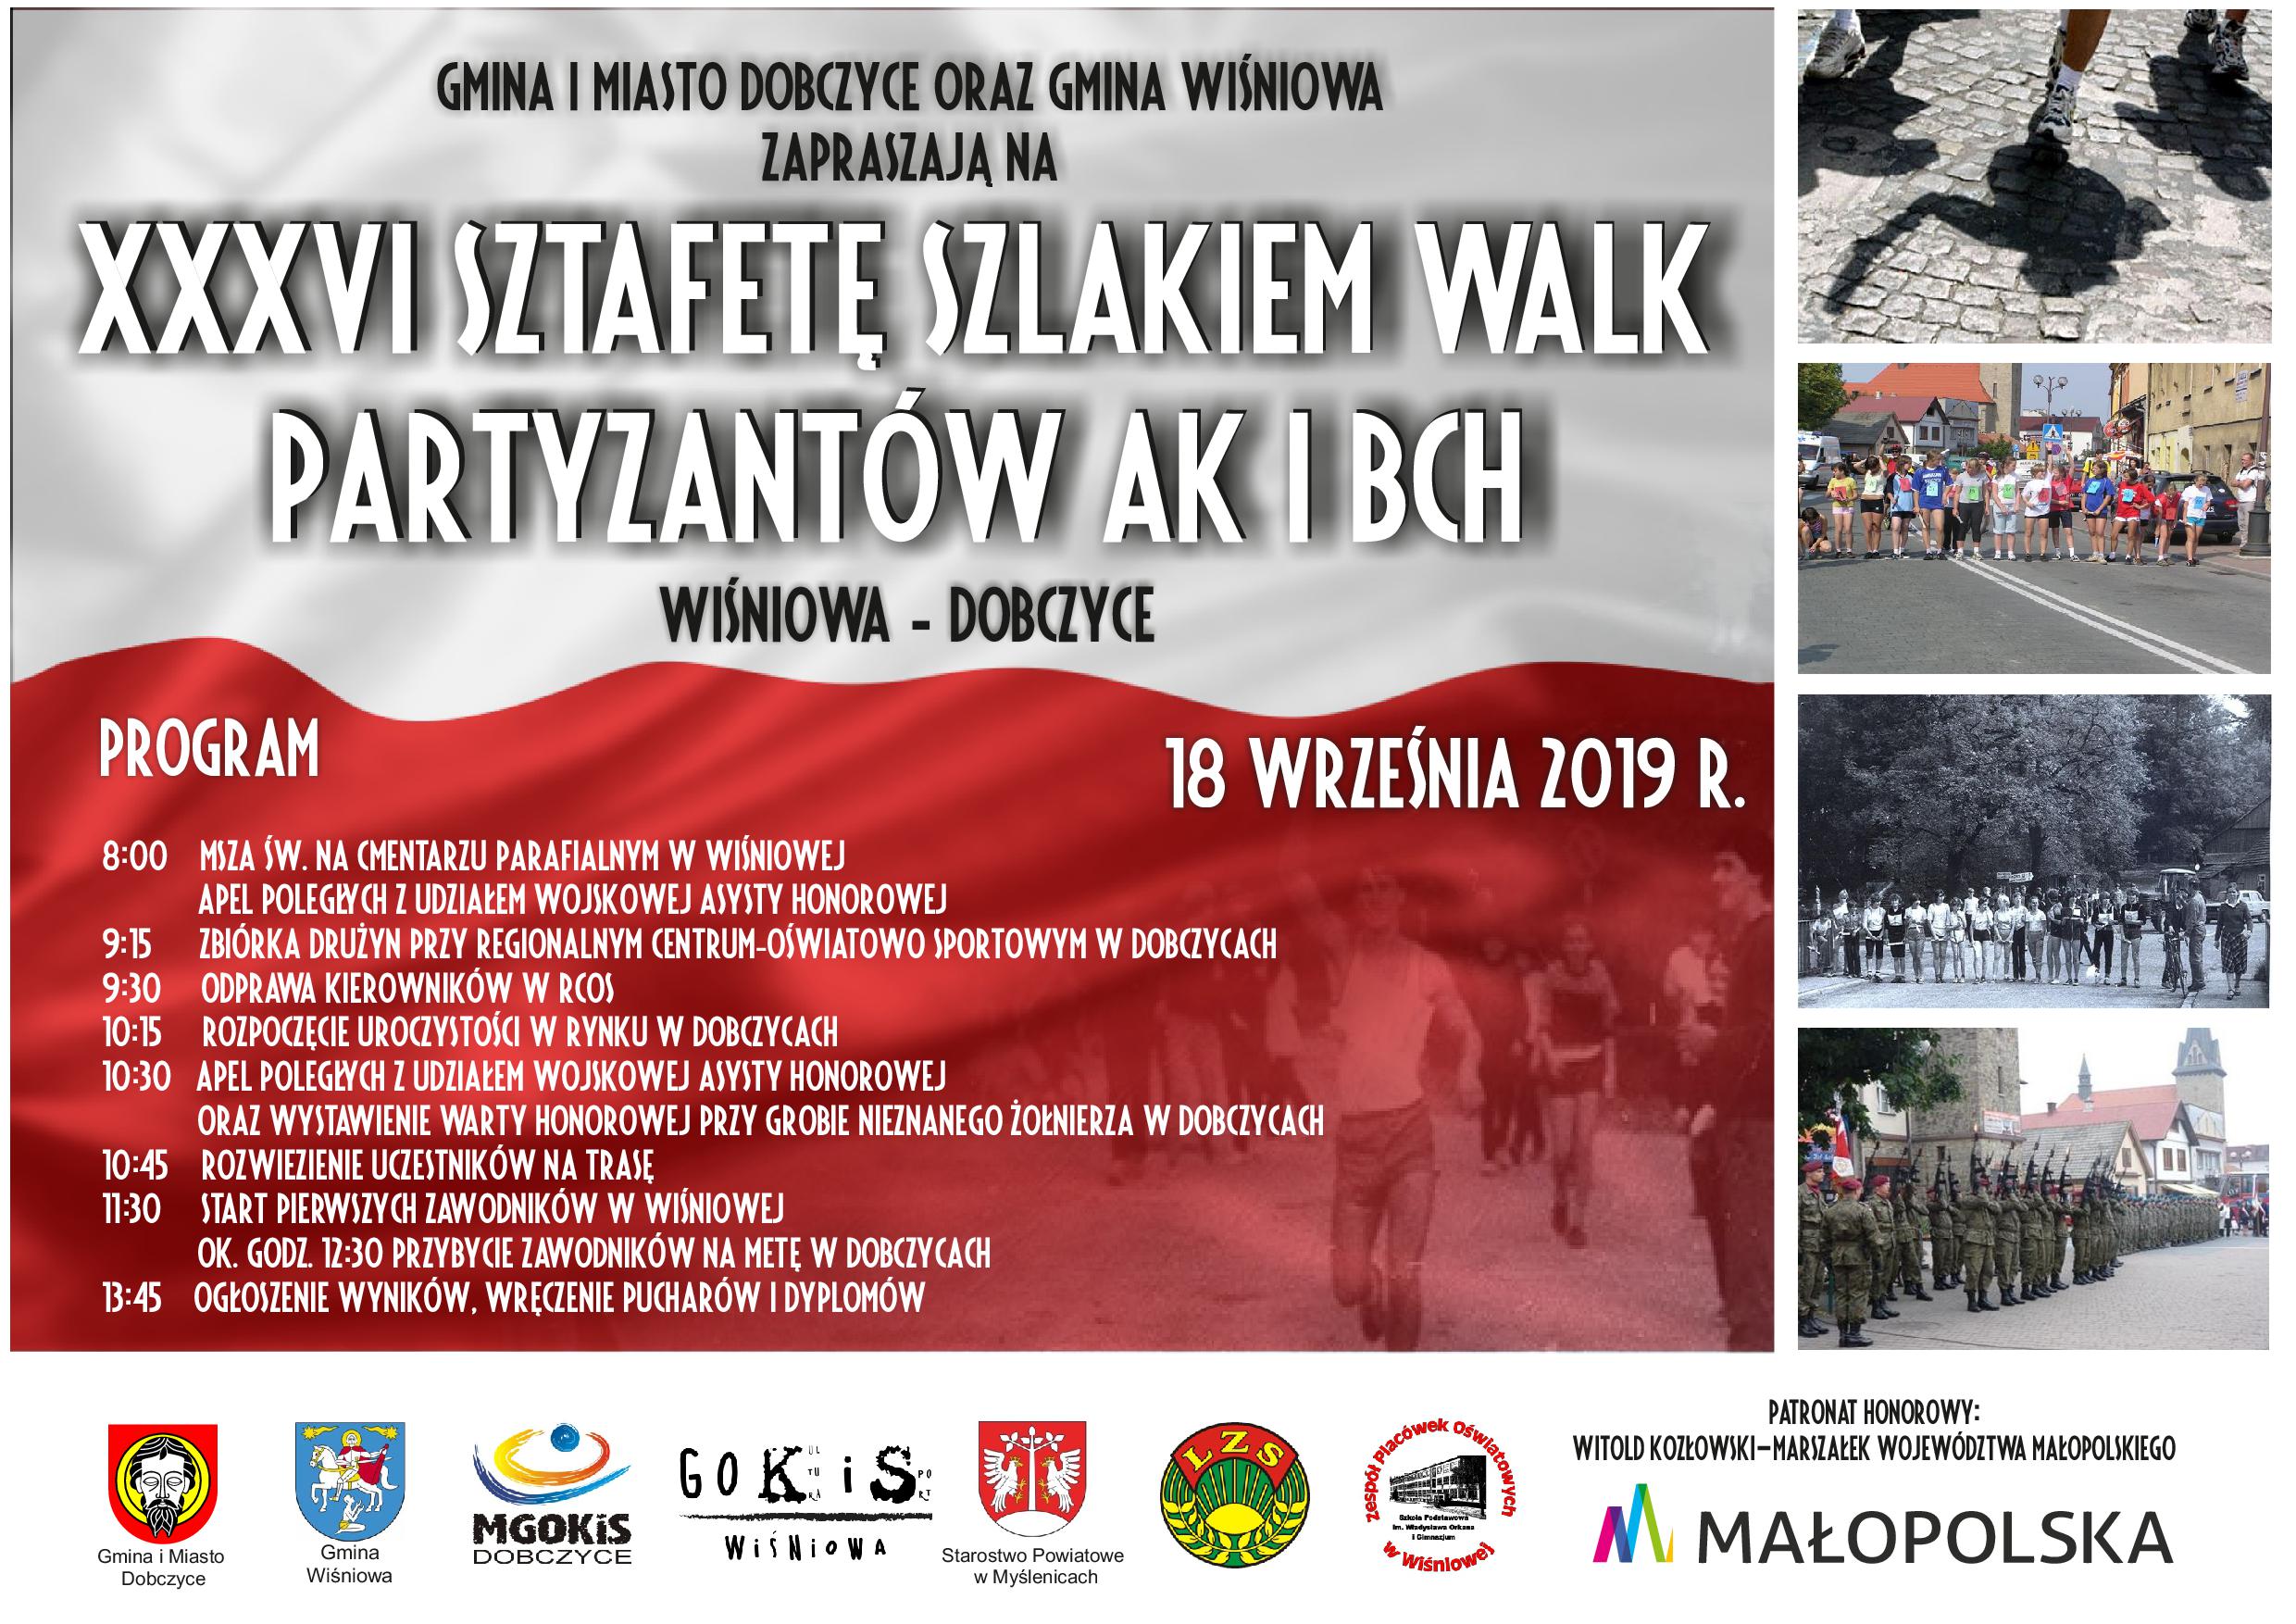 XXXVI Sztafeta Szlakiem Walk Partyzantów AK i BCh - Zaproszenie do udziału